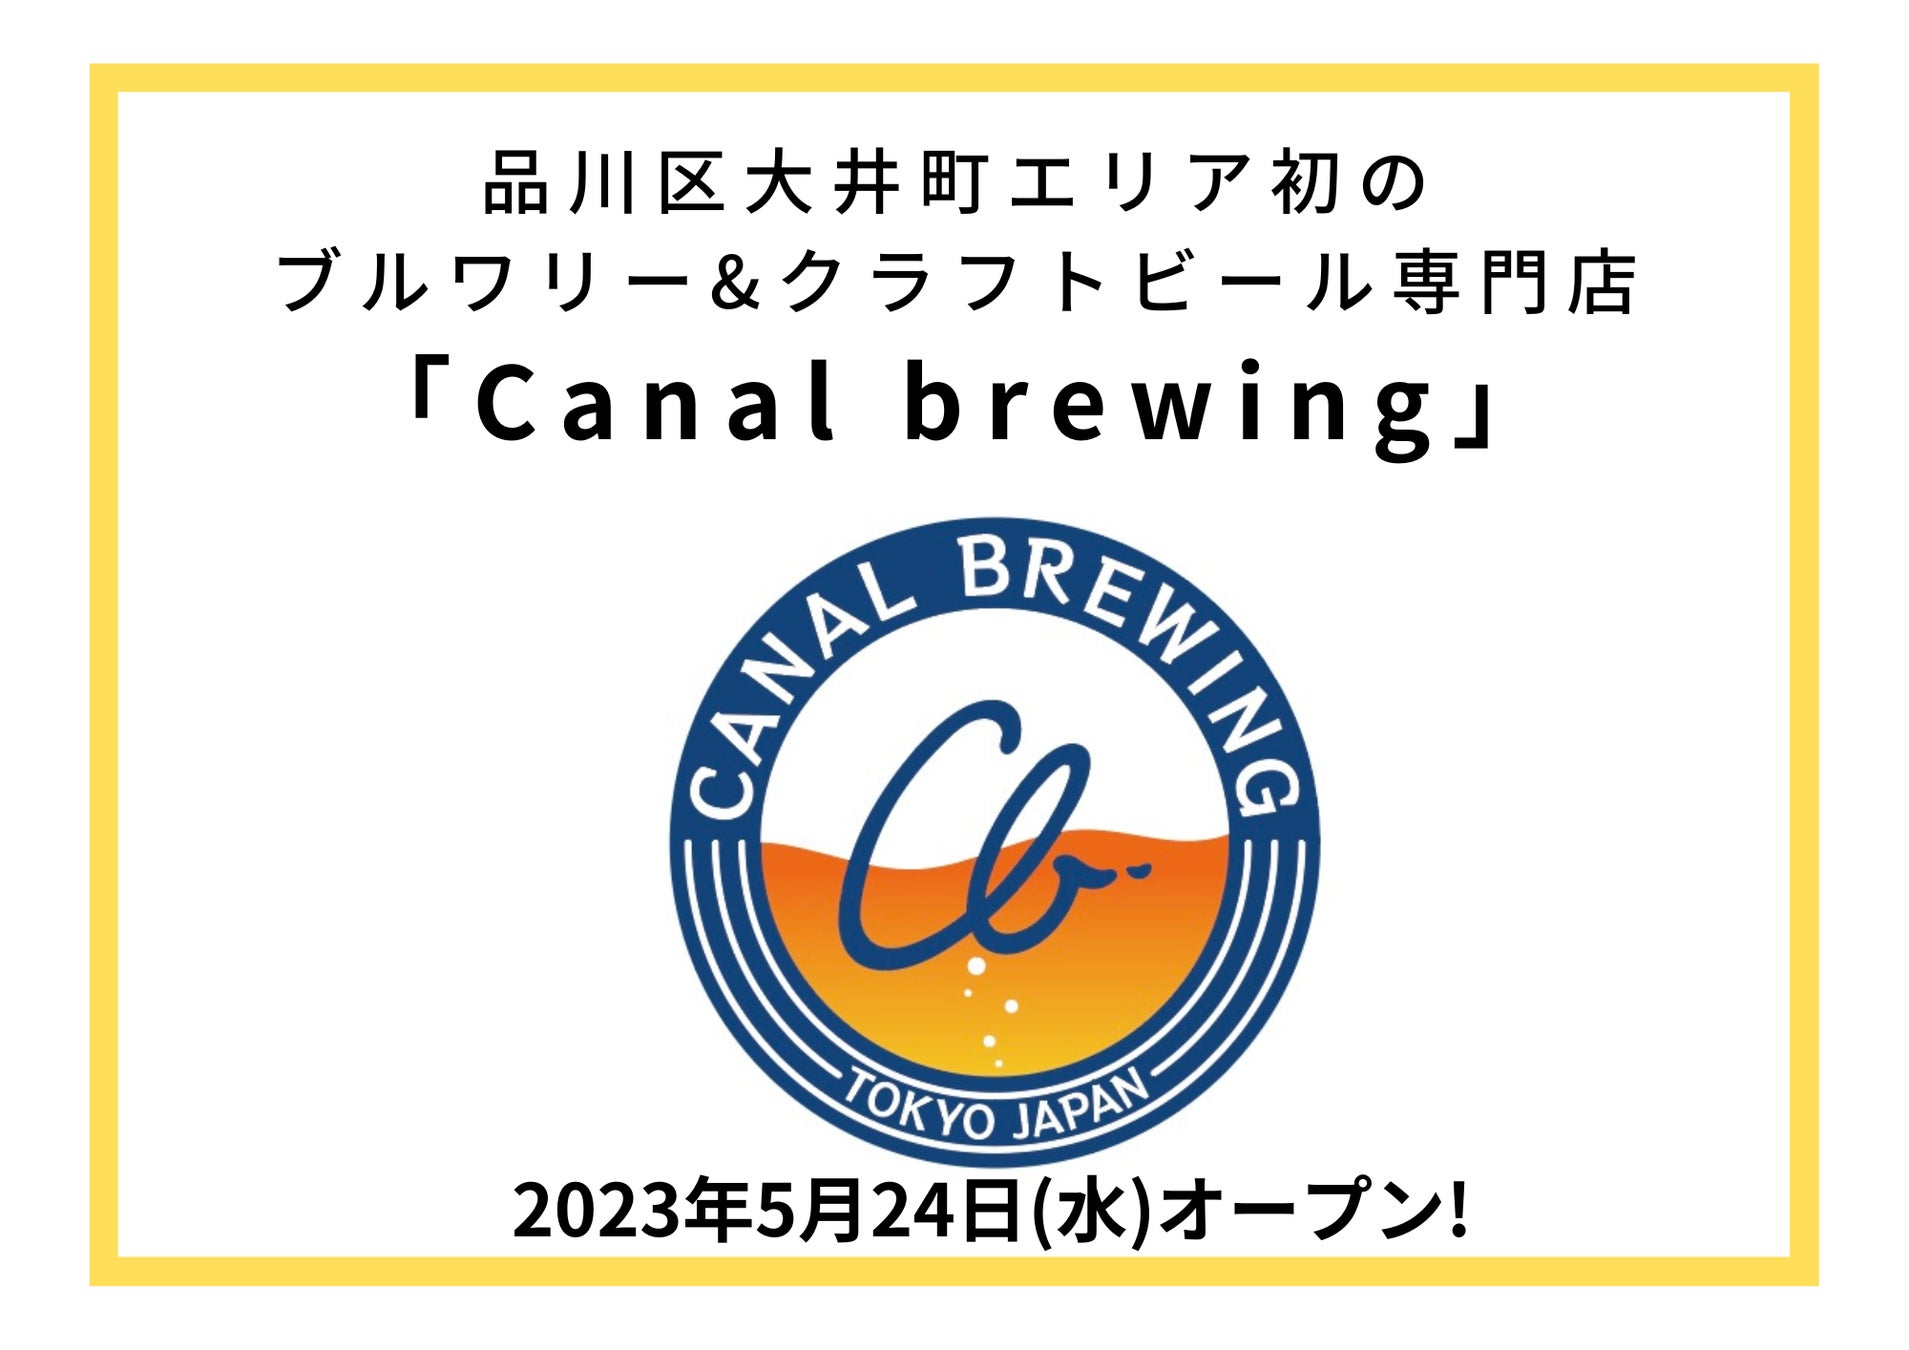 品川区大井町エリア初のブルワリー&クラフトビール専門店「Canal brewing」が2023年5月24日(水)オープン!のサブ画像1